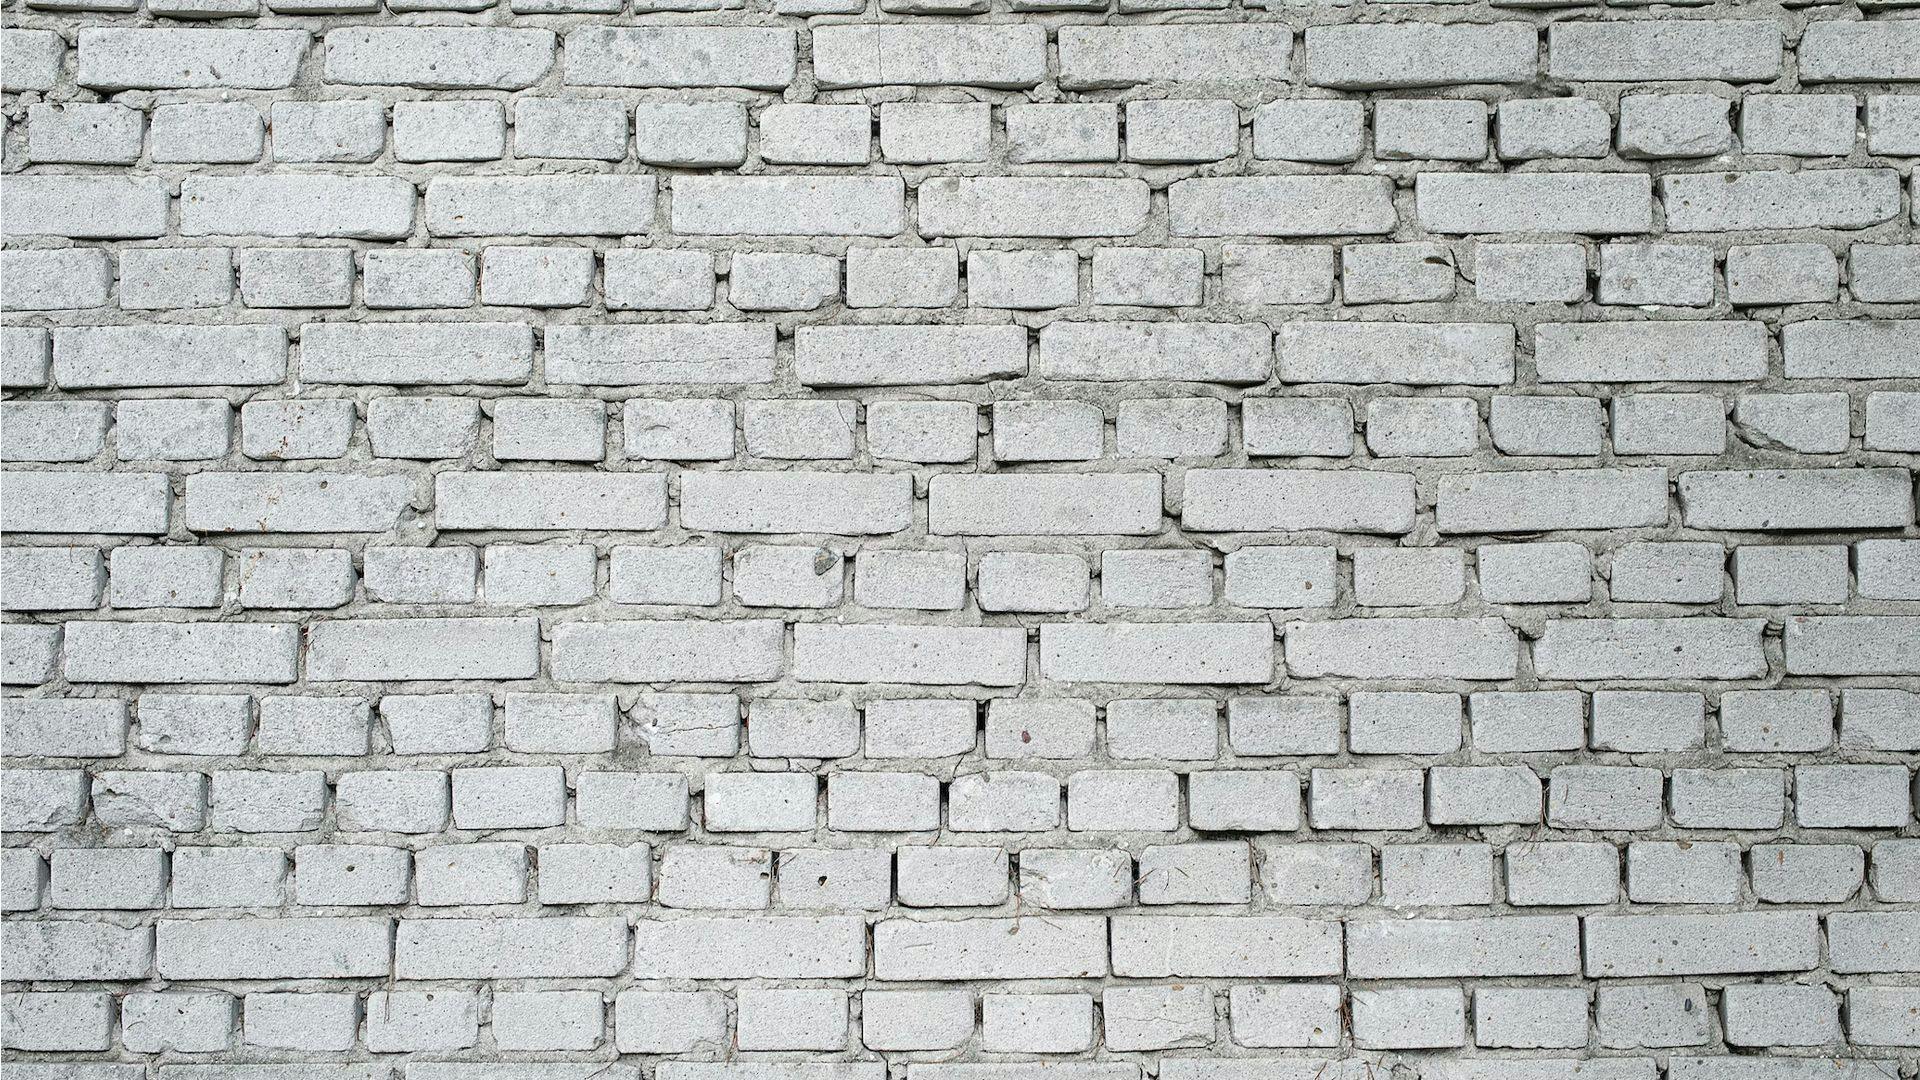 Brick Background Image